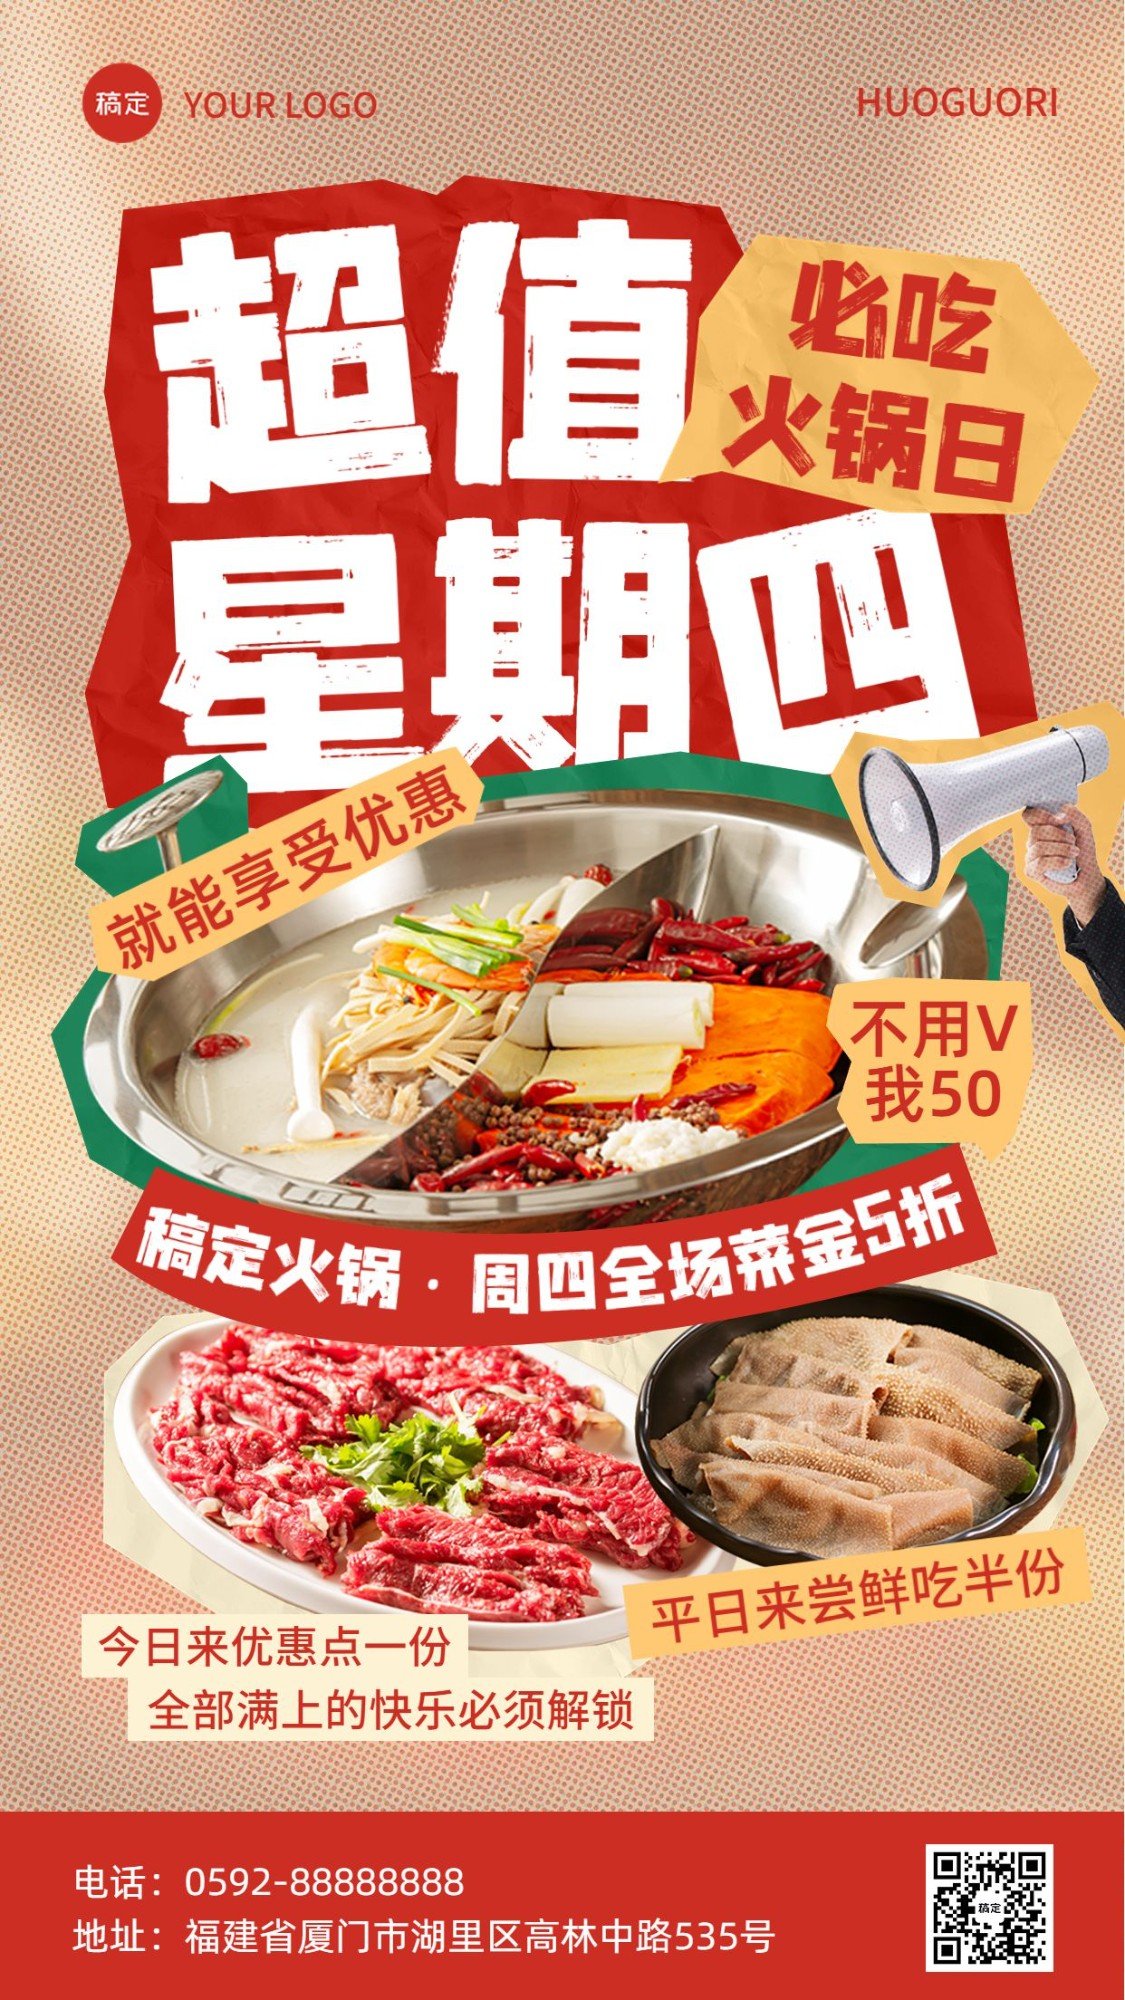 餐饮美食火锅烤肉周主题活动营销全屏竖版海报预览效果